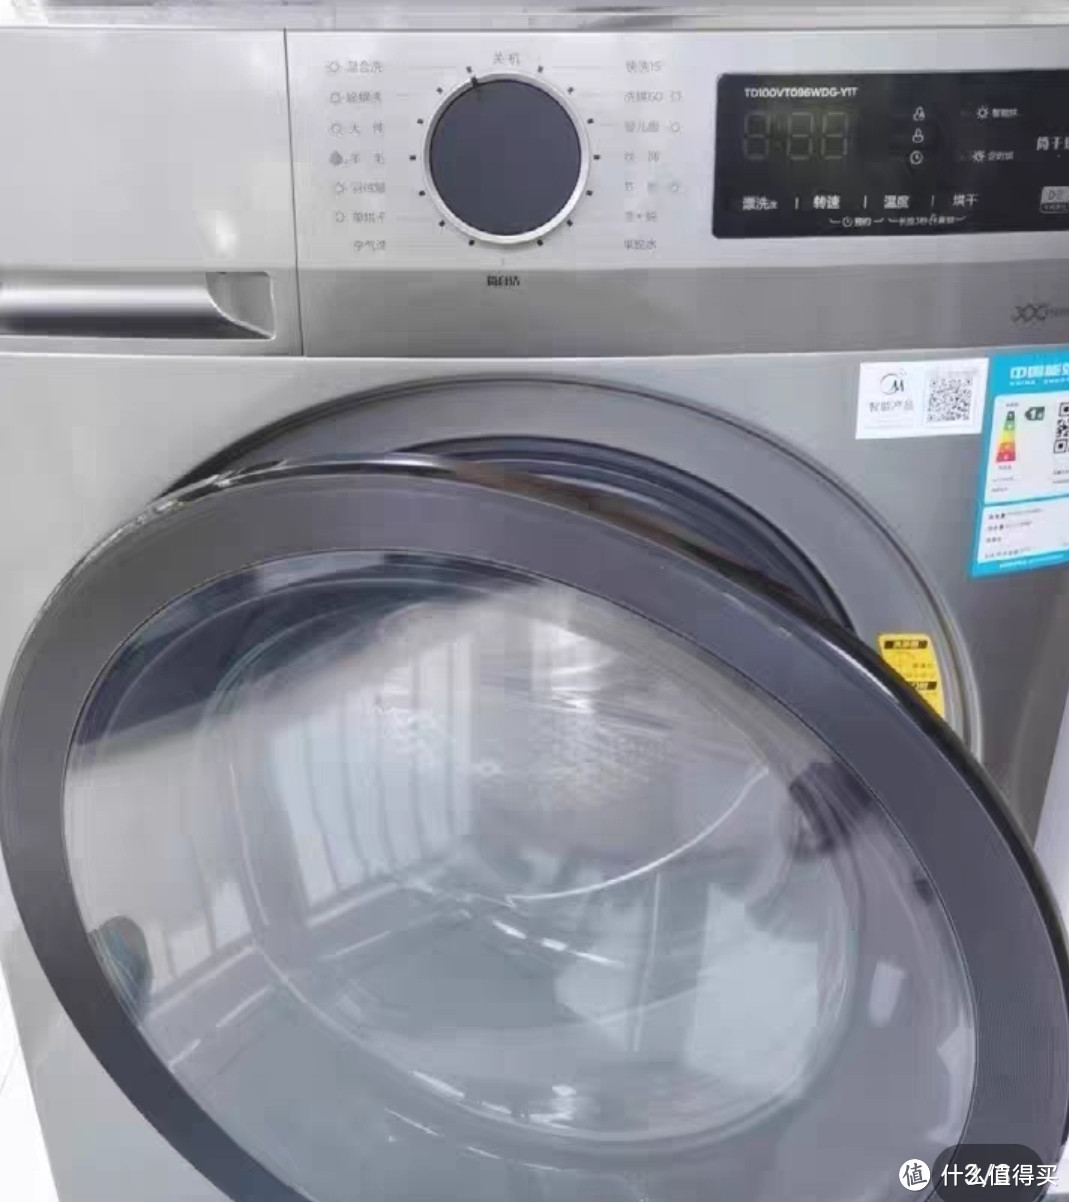 洗衣机购买小常识:只买对的不买贵的